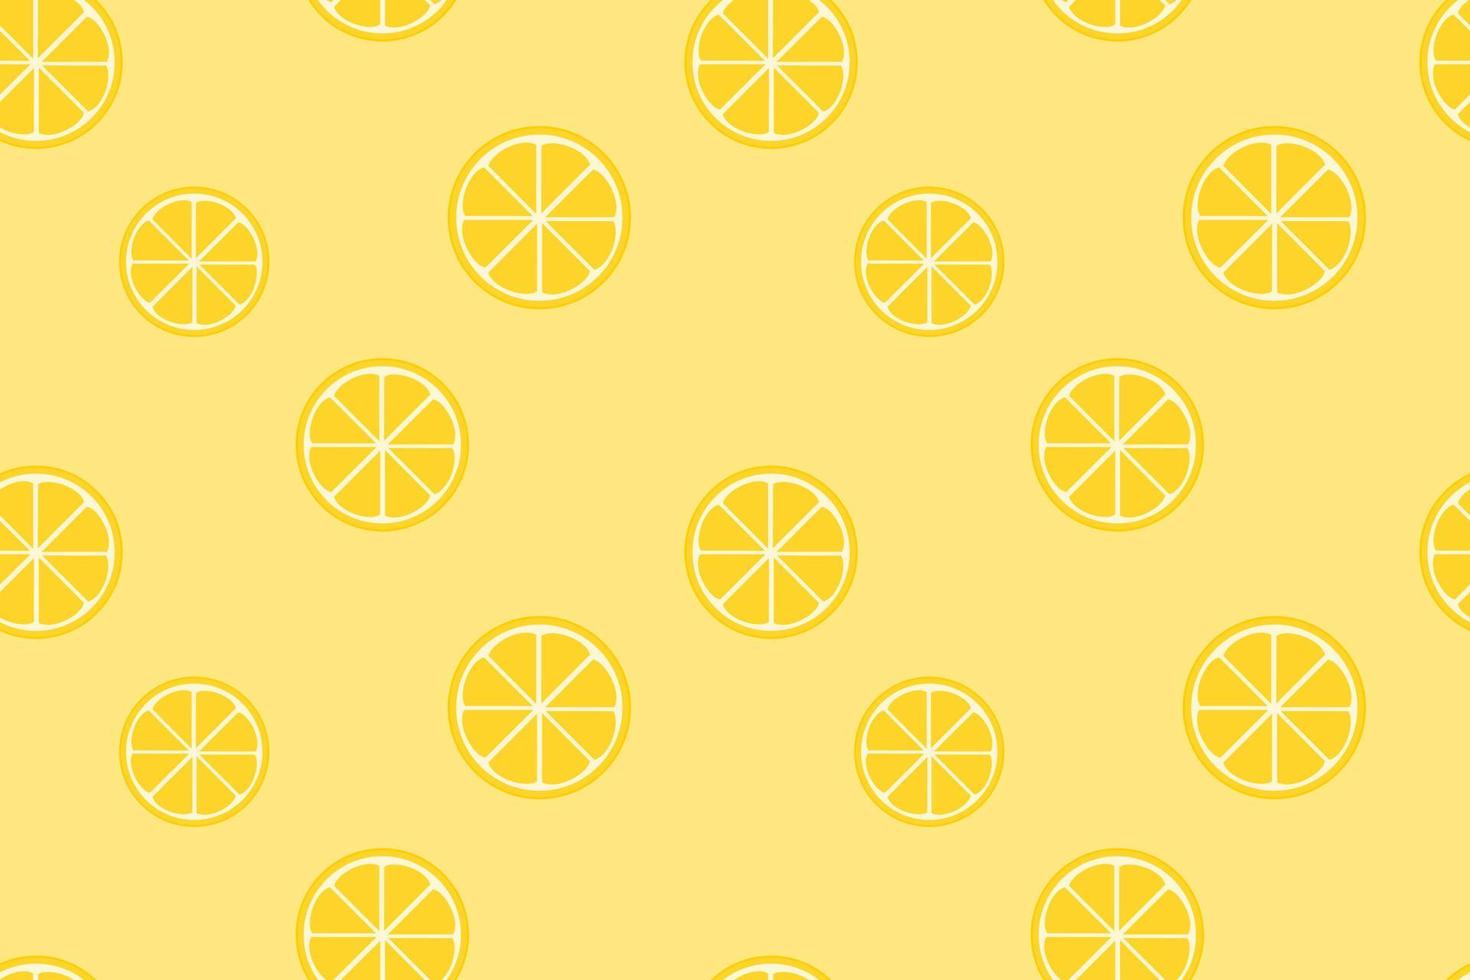 citroen naadloos patroon geel ontwerp vector